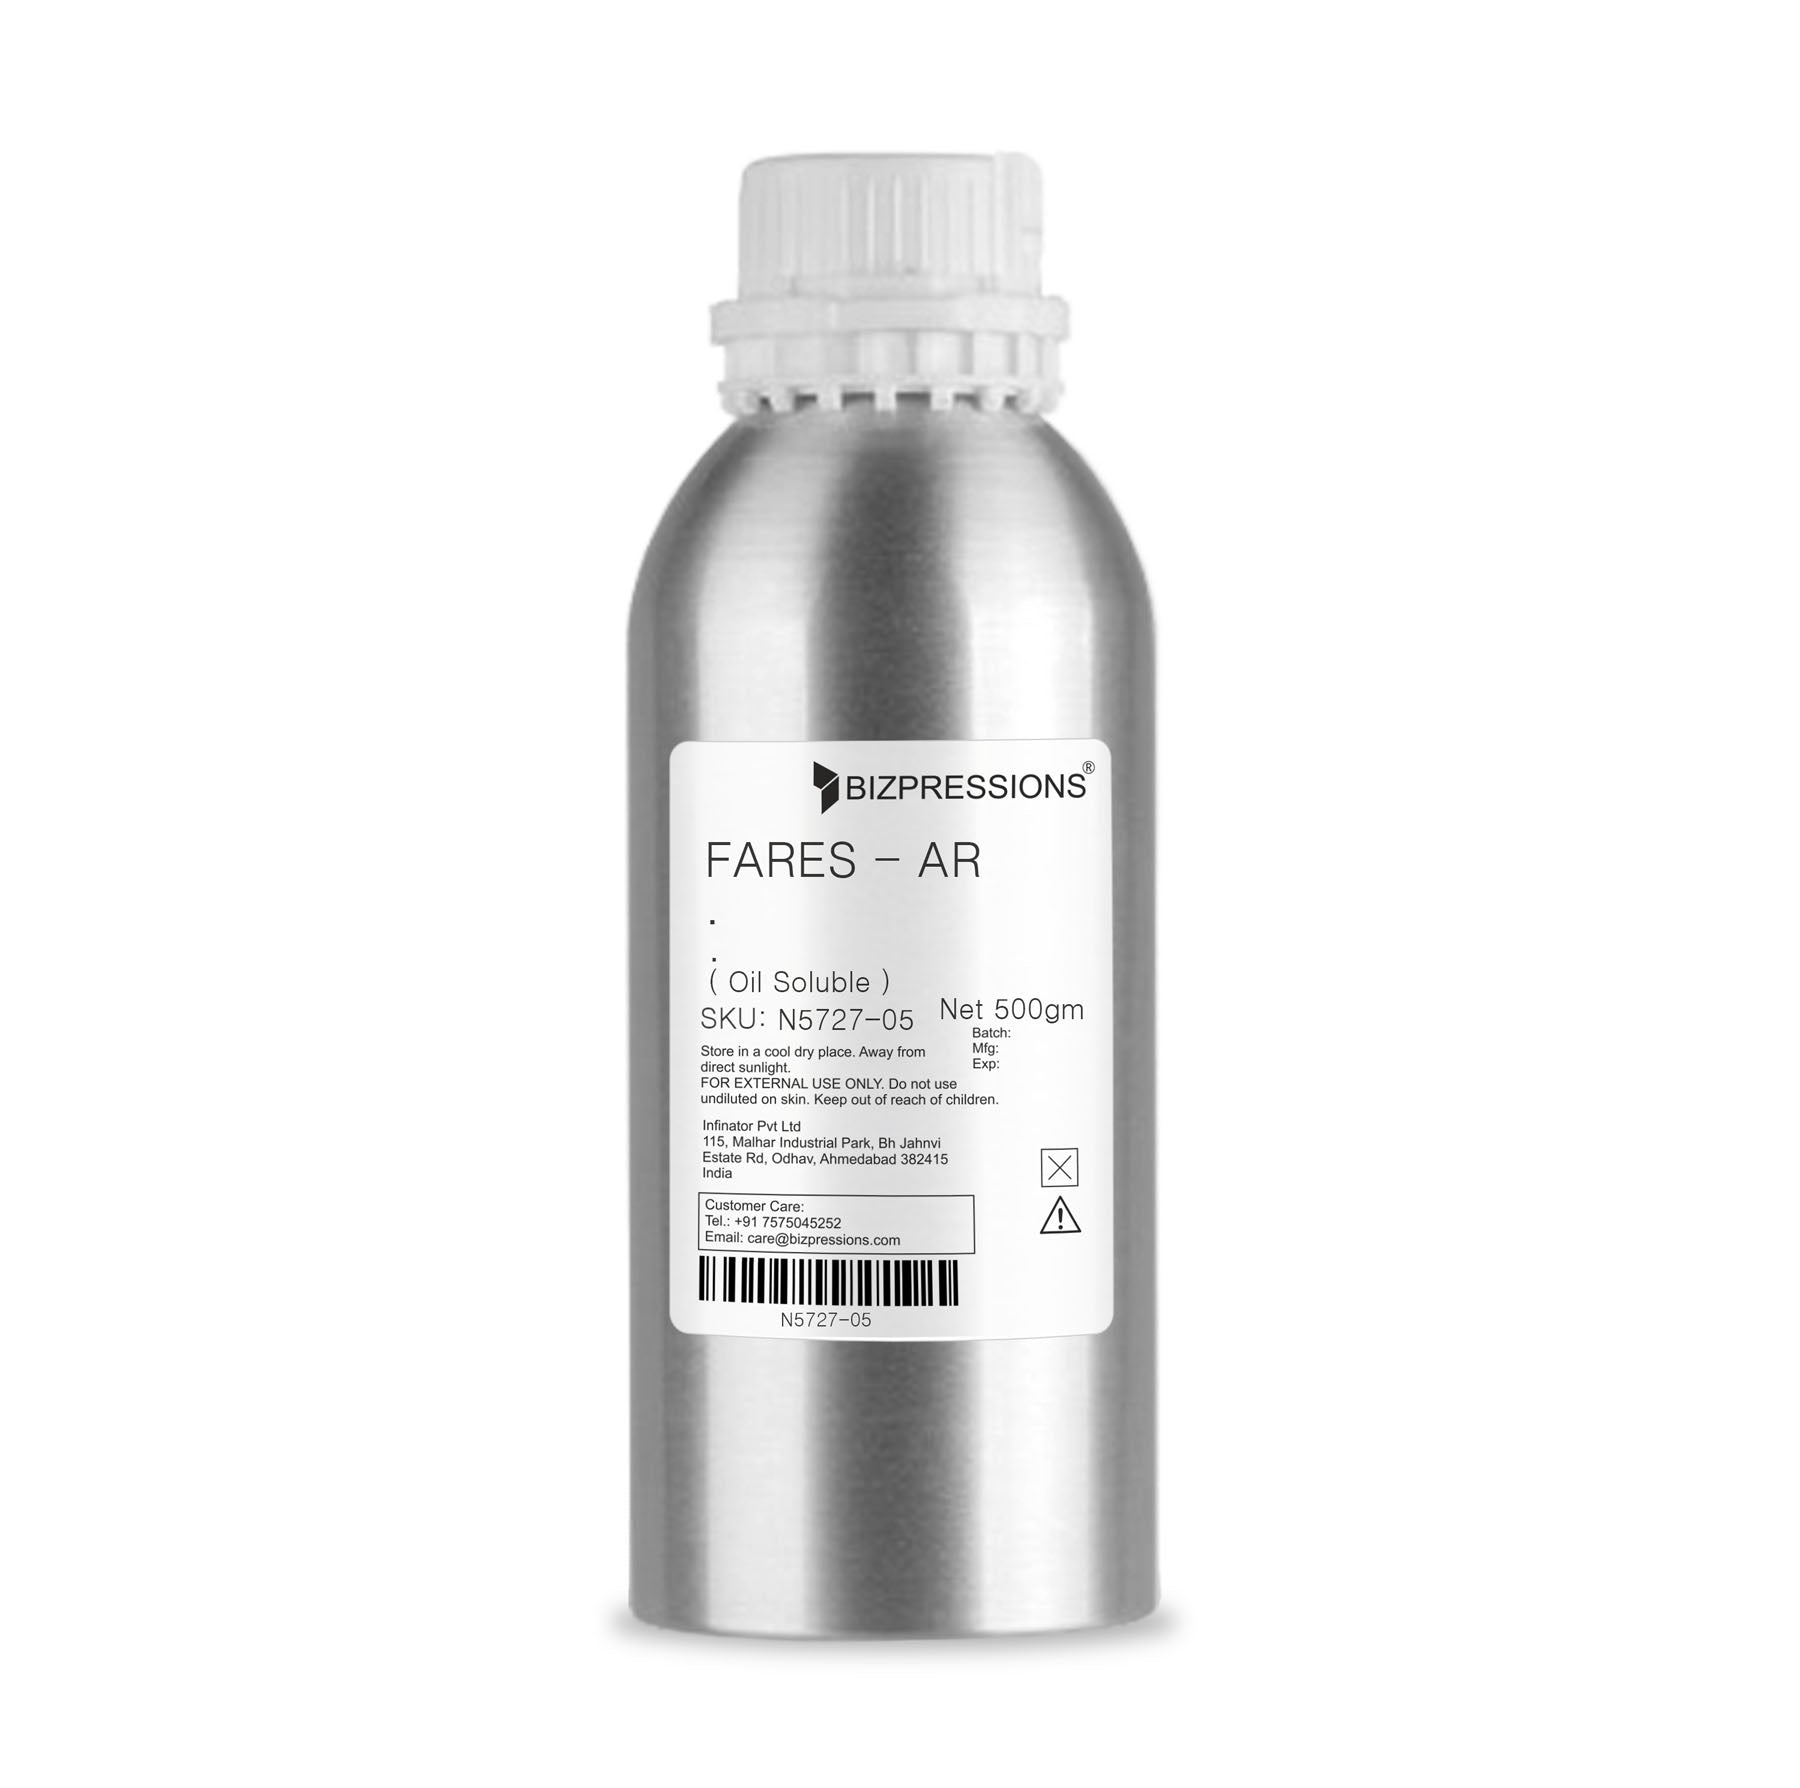 FARES - AR - Fragrance ( Oil Soluble ) - 500 gm